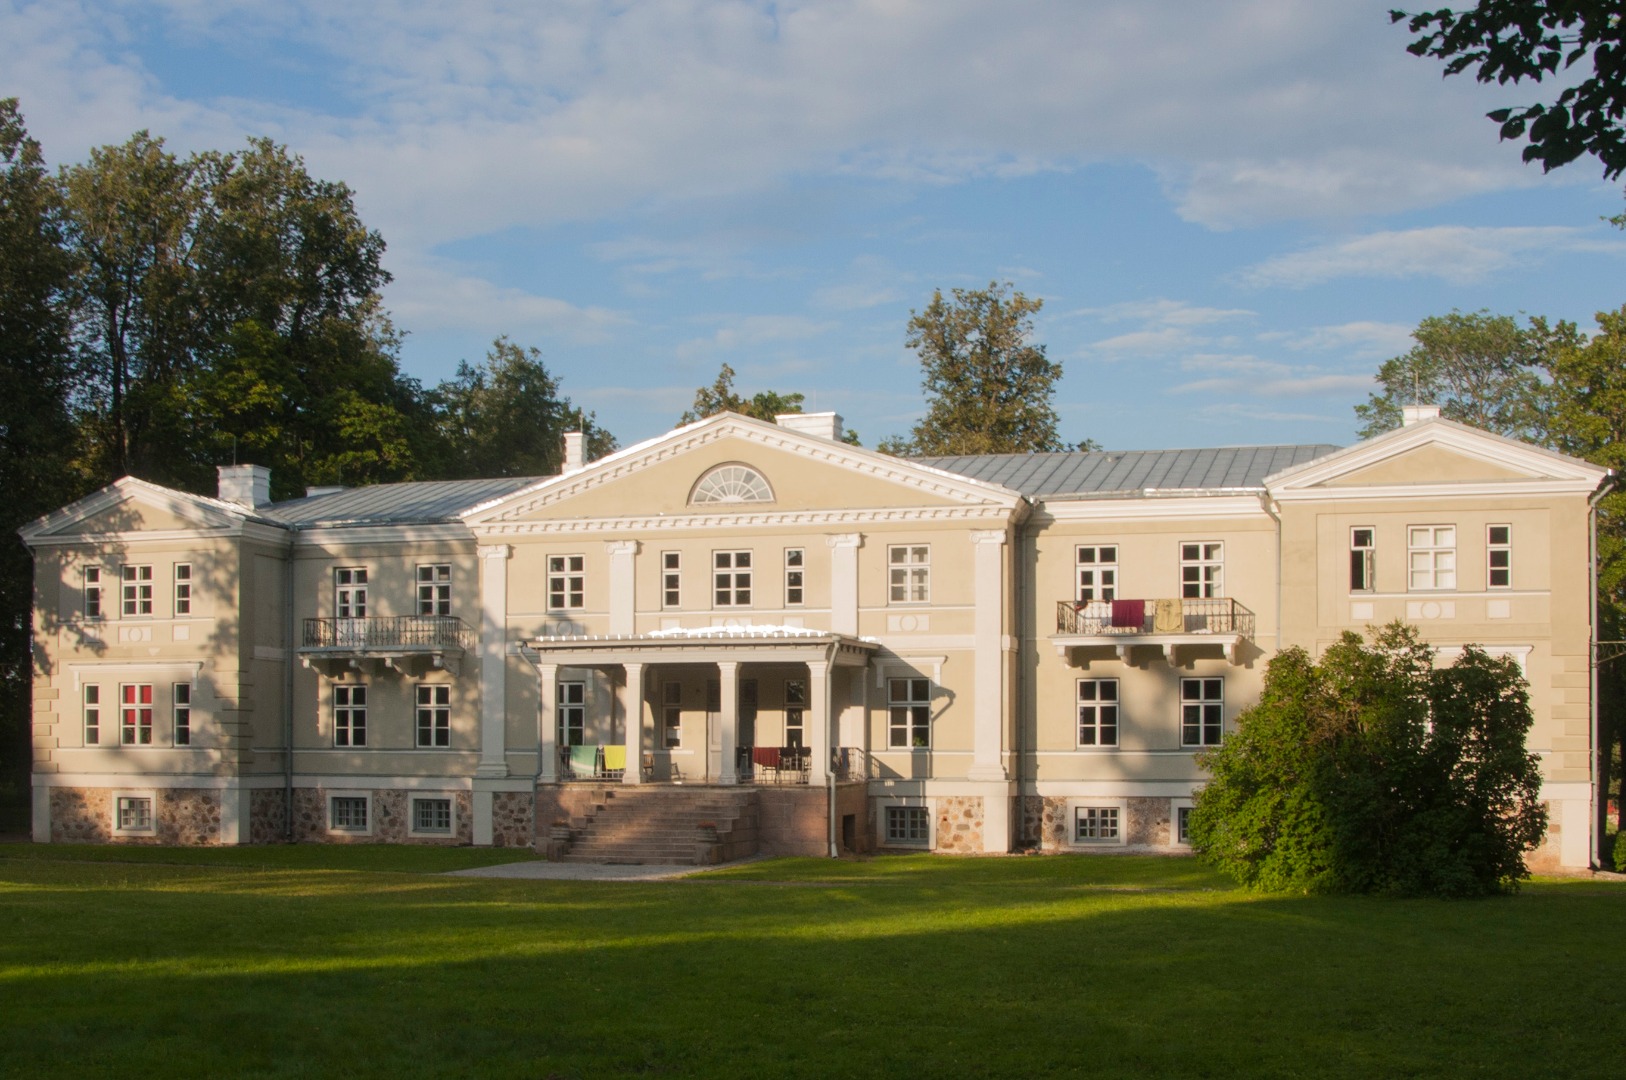 foto, Viljandimaa, Kõpu kool mõisahoone's, u 1930, foto H. Tilk rephoto